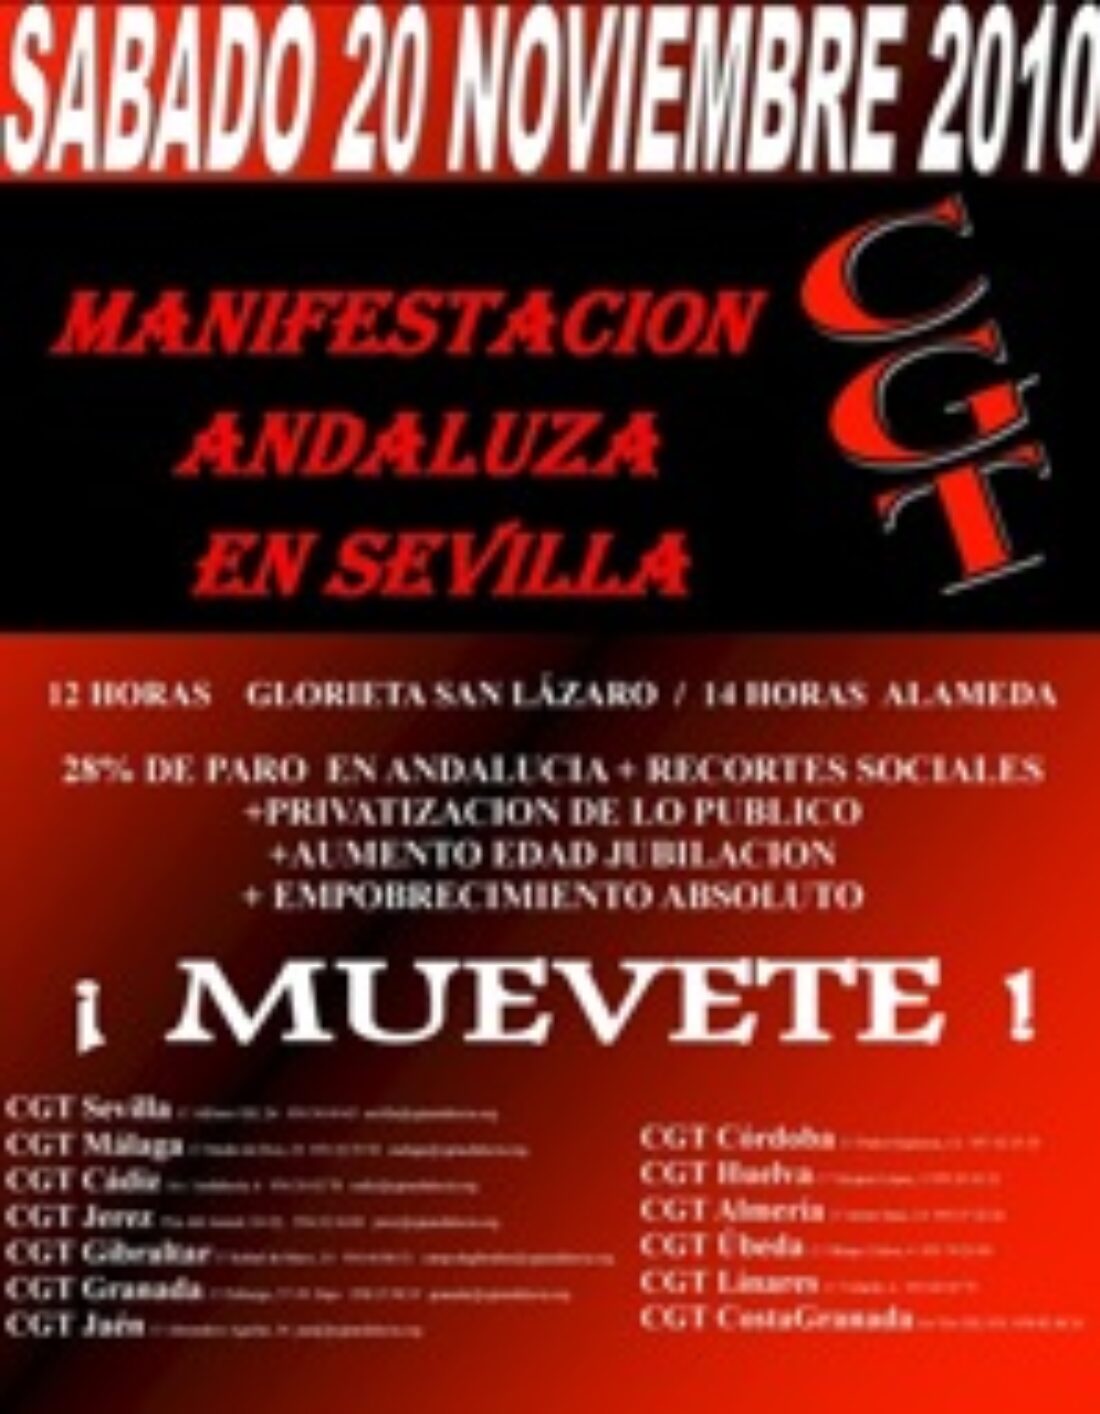 20 nov, Sevilla : Manifestación Andaluza de CGT contra los recortes, el paro y la precariedad